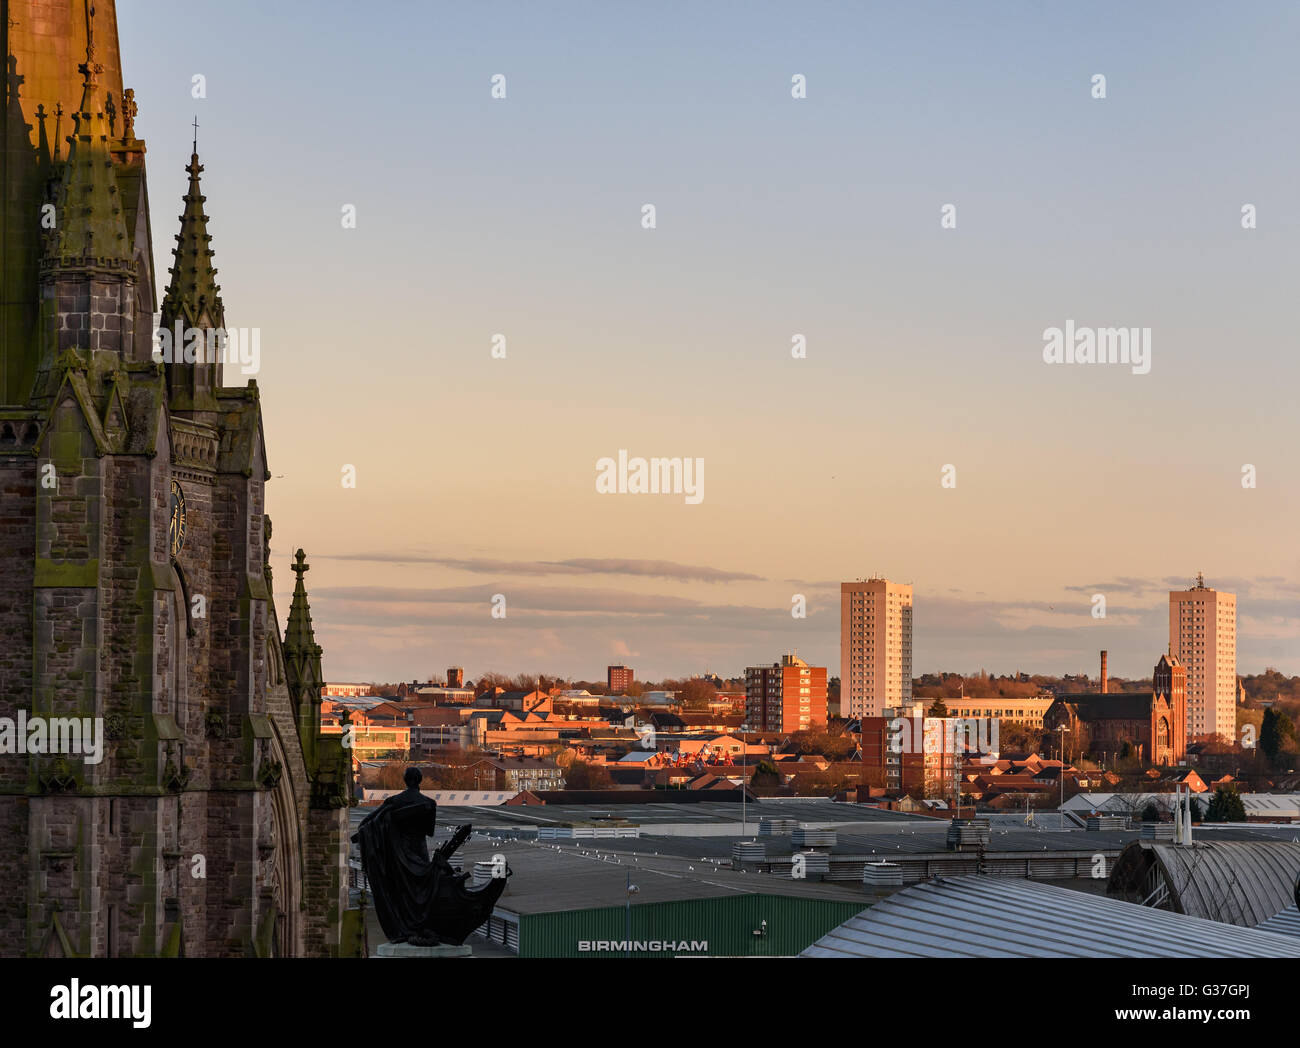 Birmingham è una città in Inghilterra con più rivoluzione industriale-ser i punti di riferimento Foto Stock